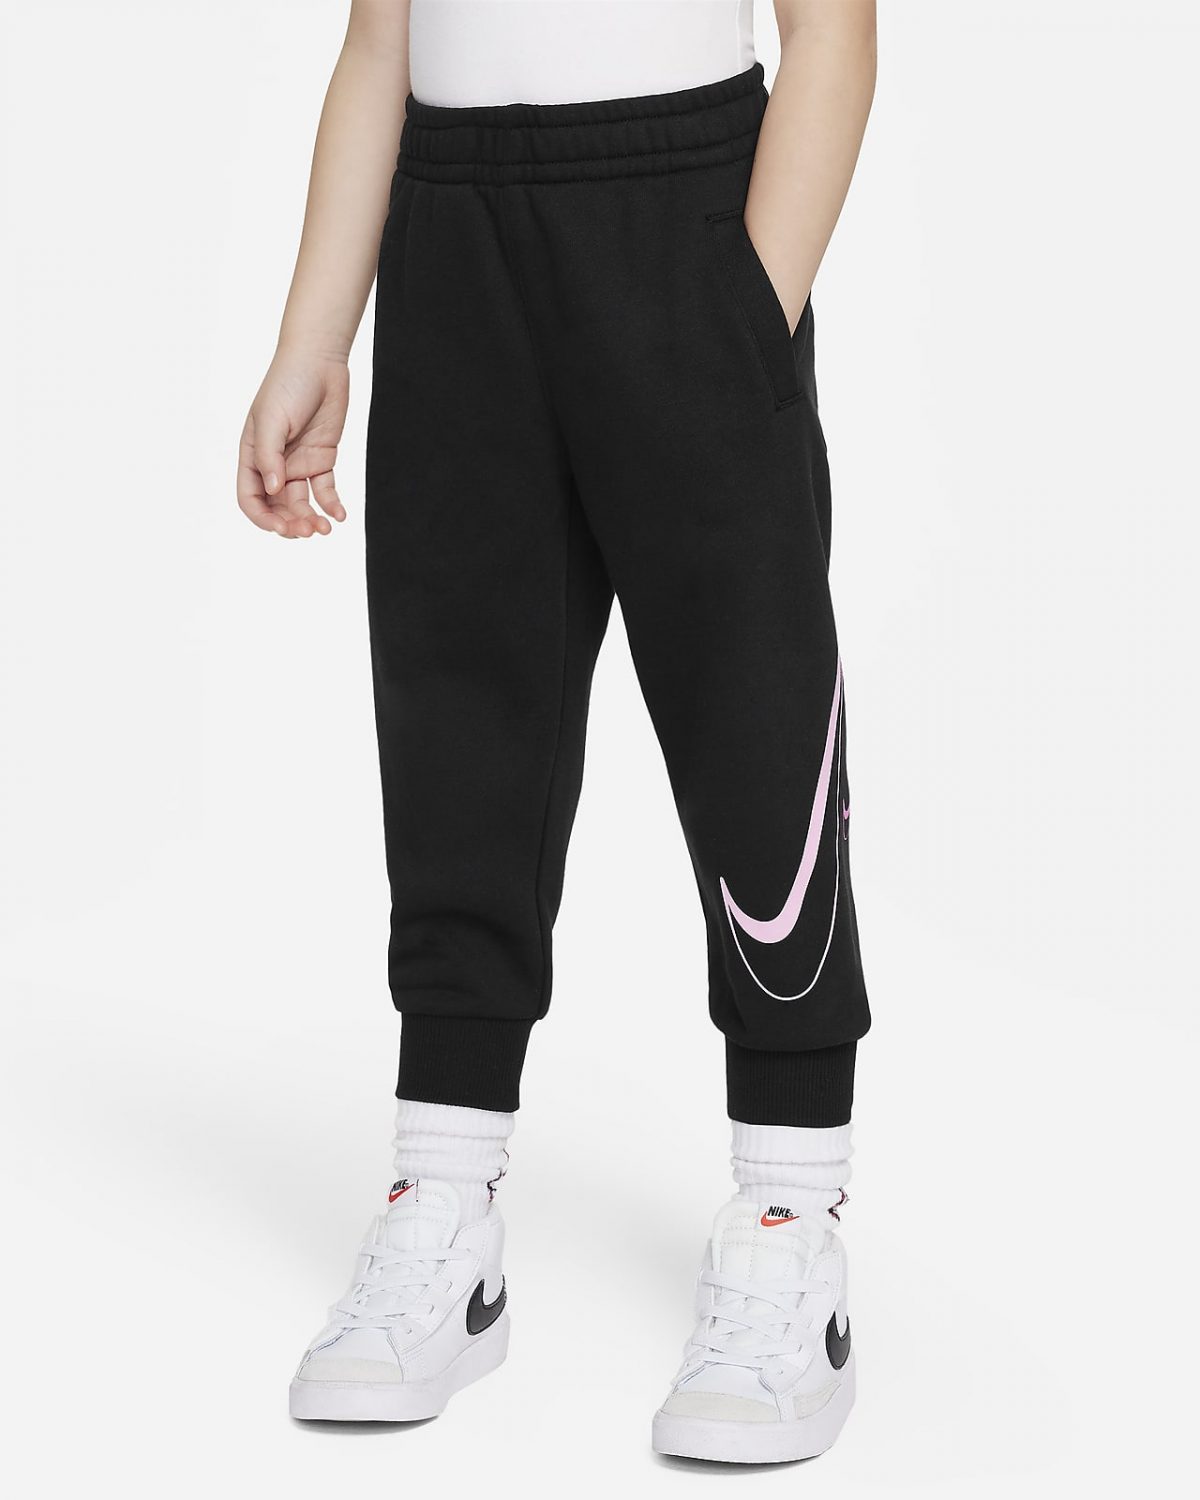 Детские брюки Nike Swoosh фото